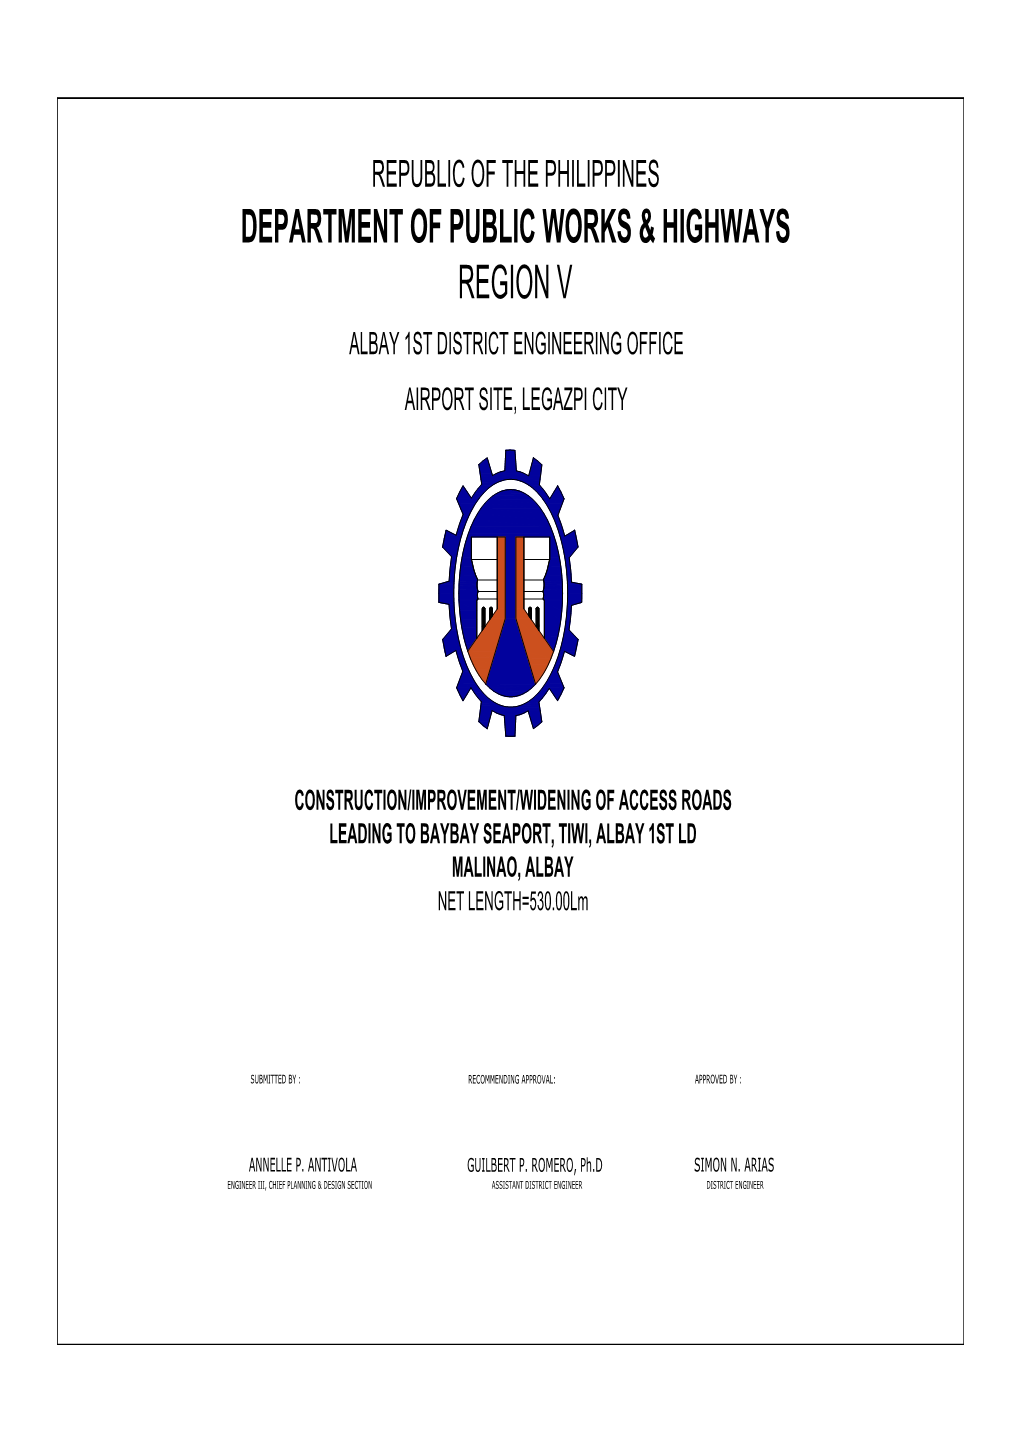 Department of Public Works & Highways Region V